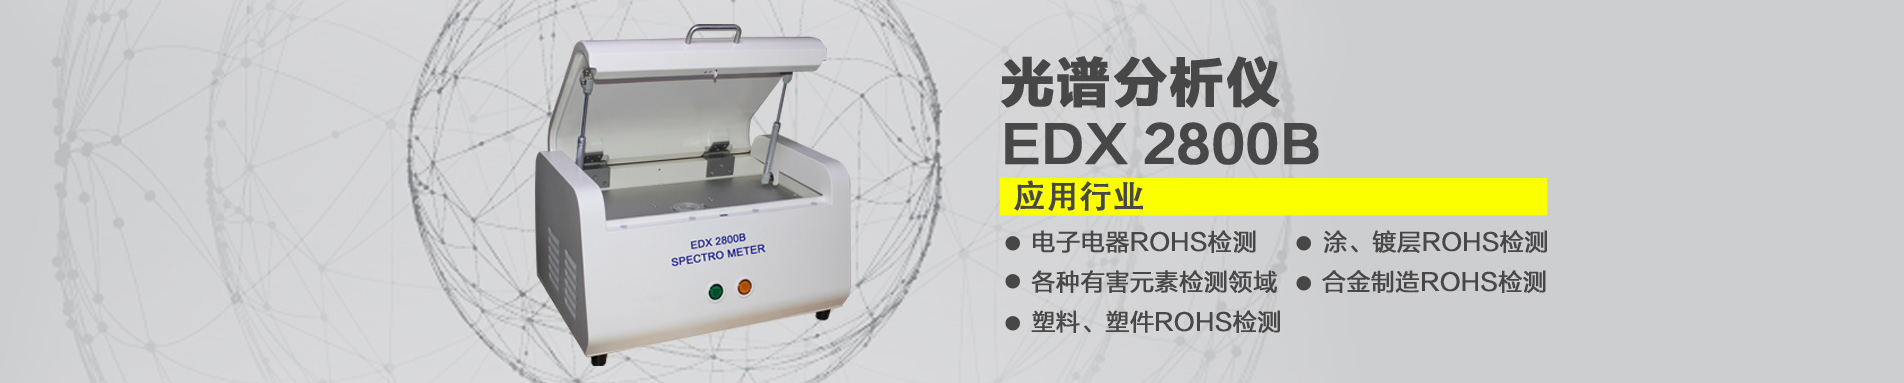 EDX 2800B